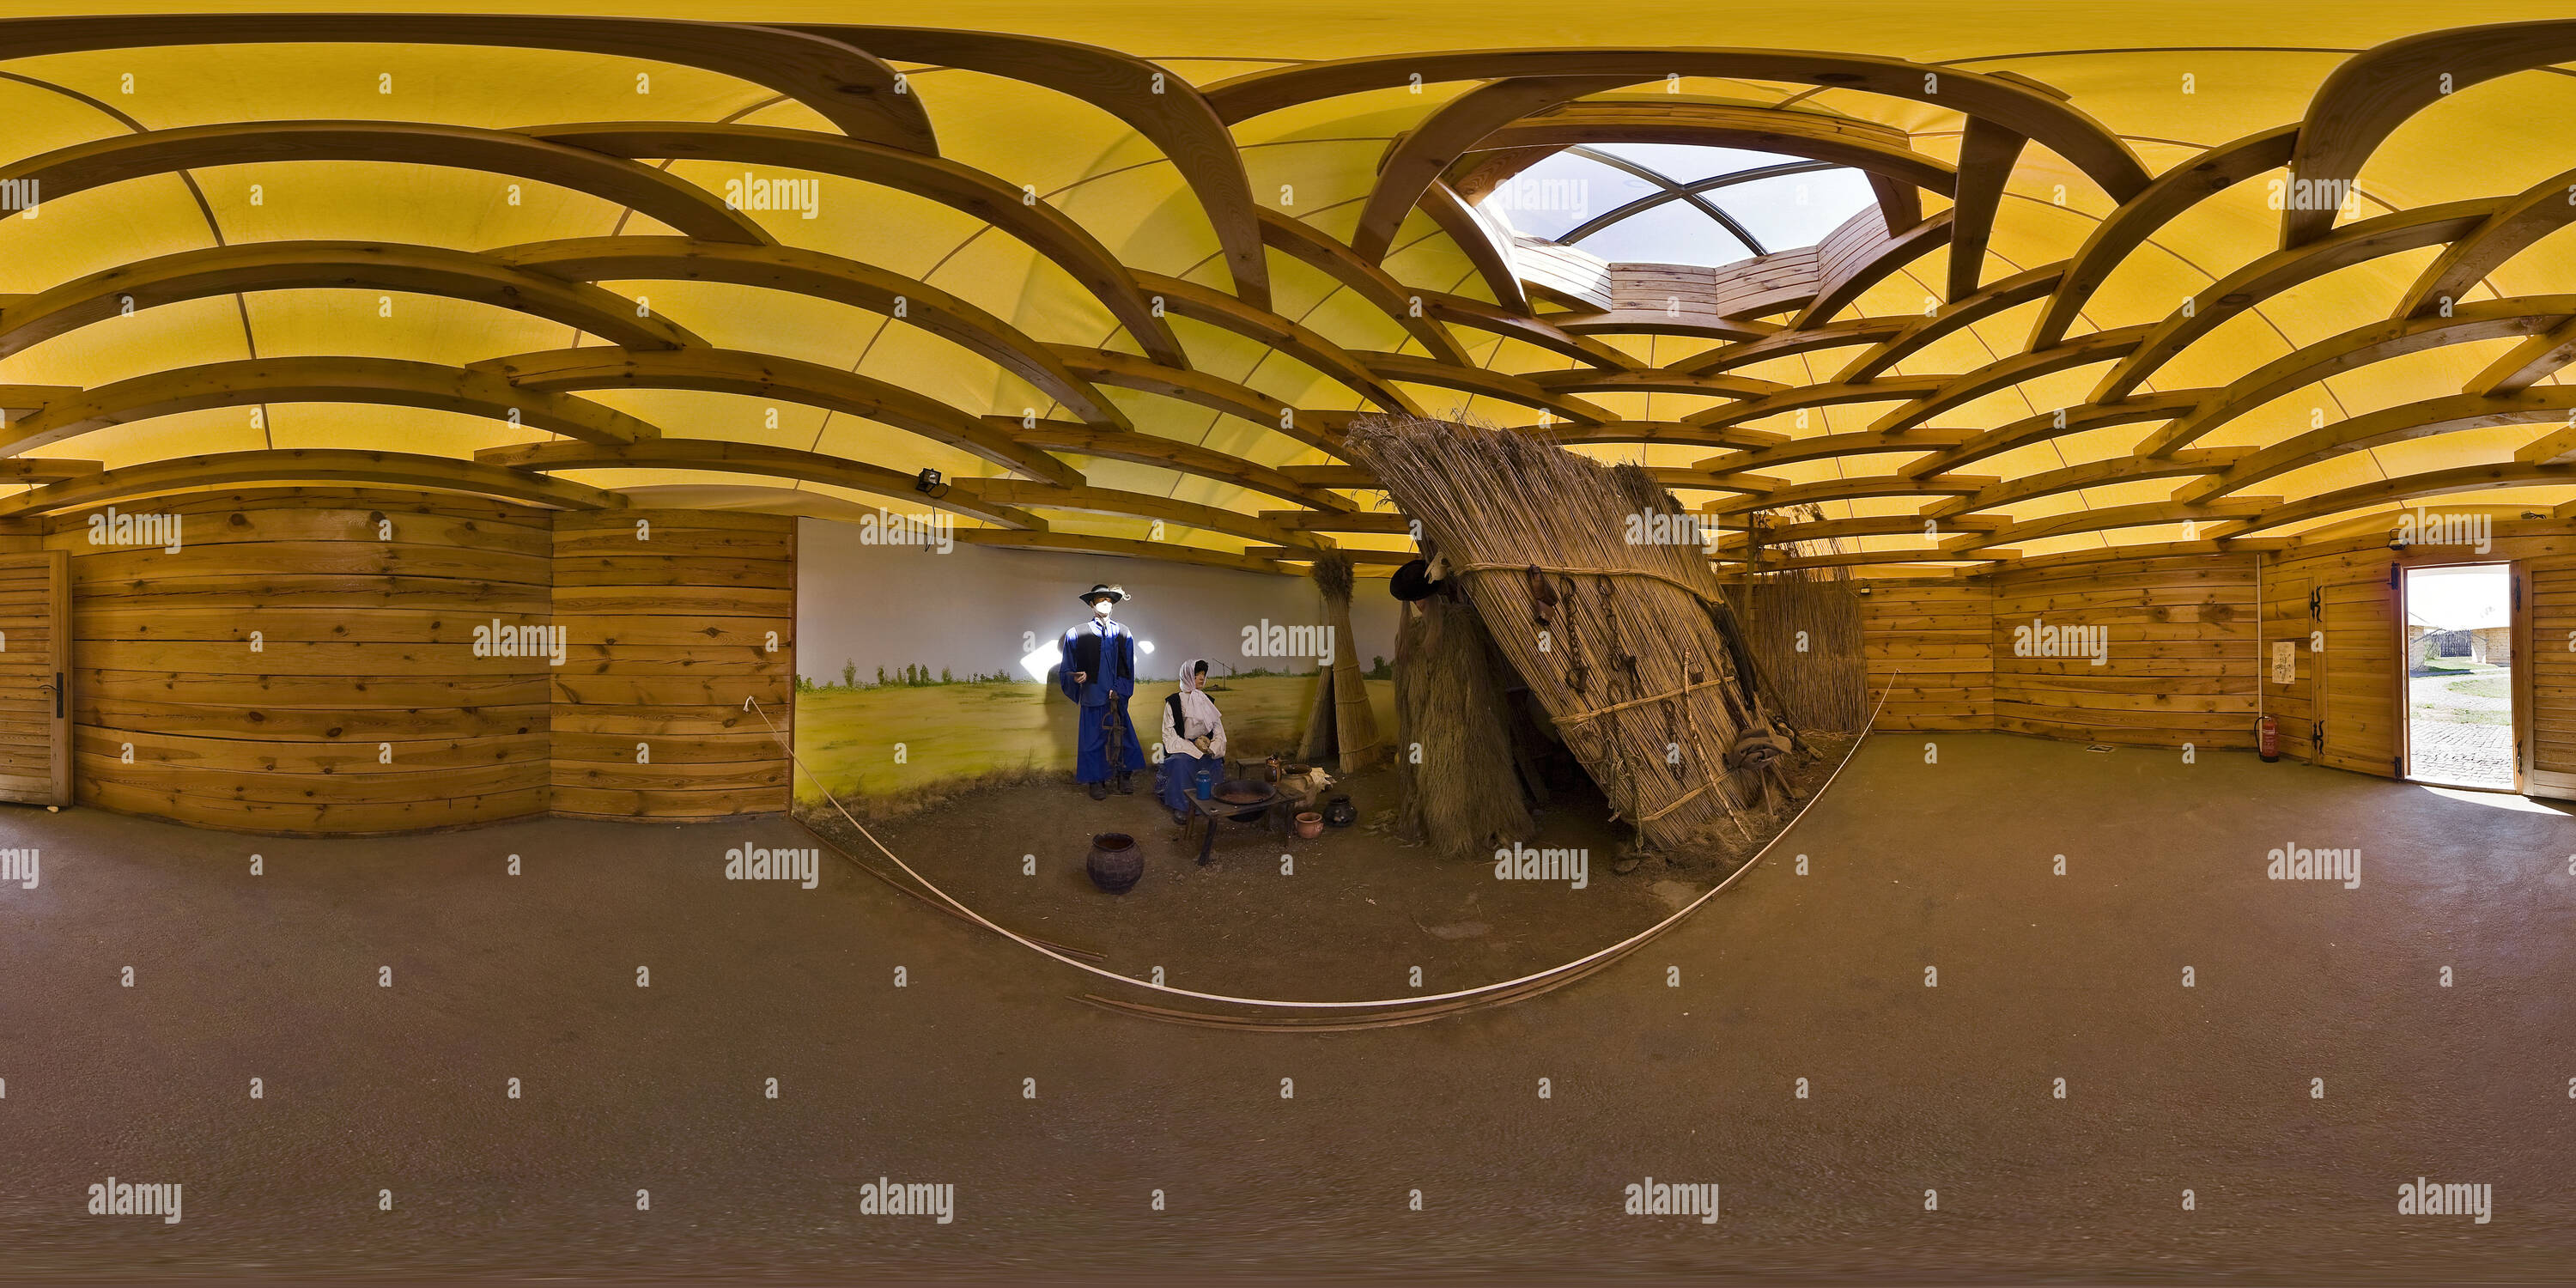 Visualizzazione panoramica a 360 gradi di M3 Archeopark - cavallo-herder, pastore la vita